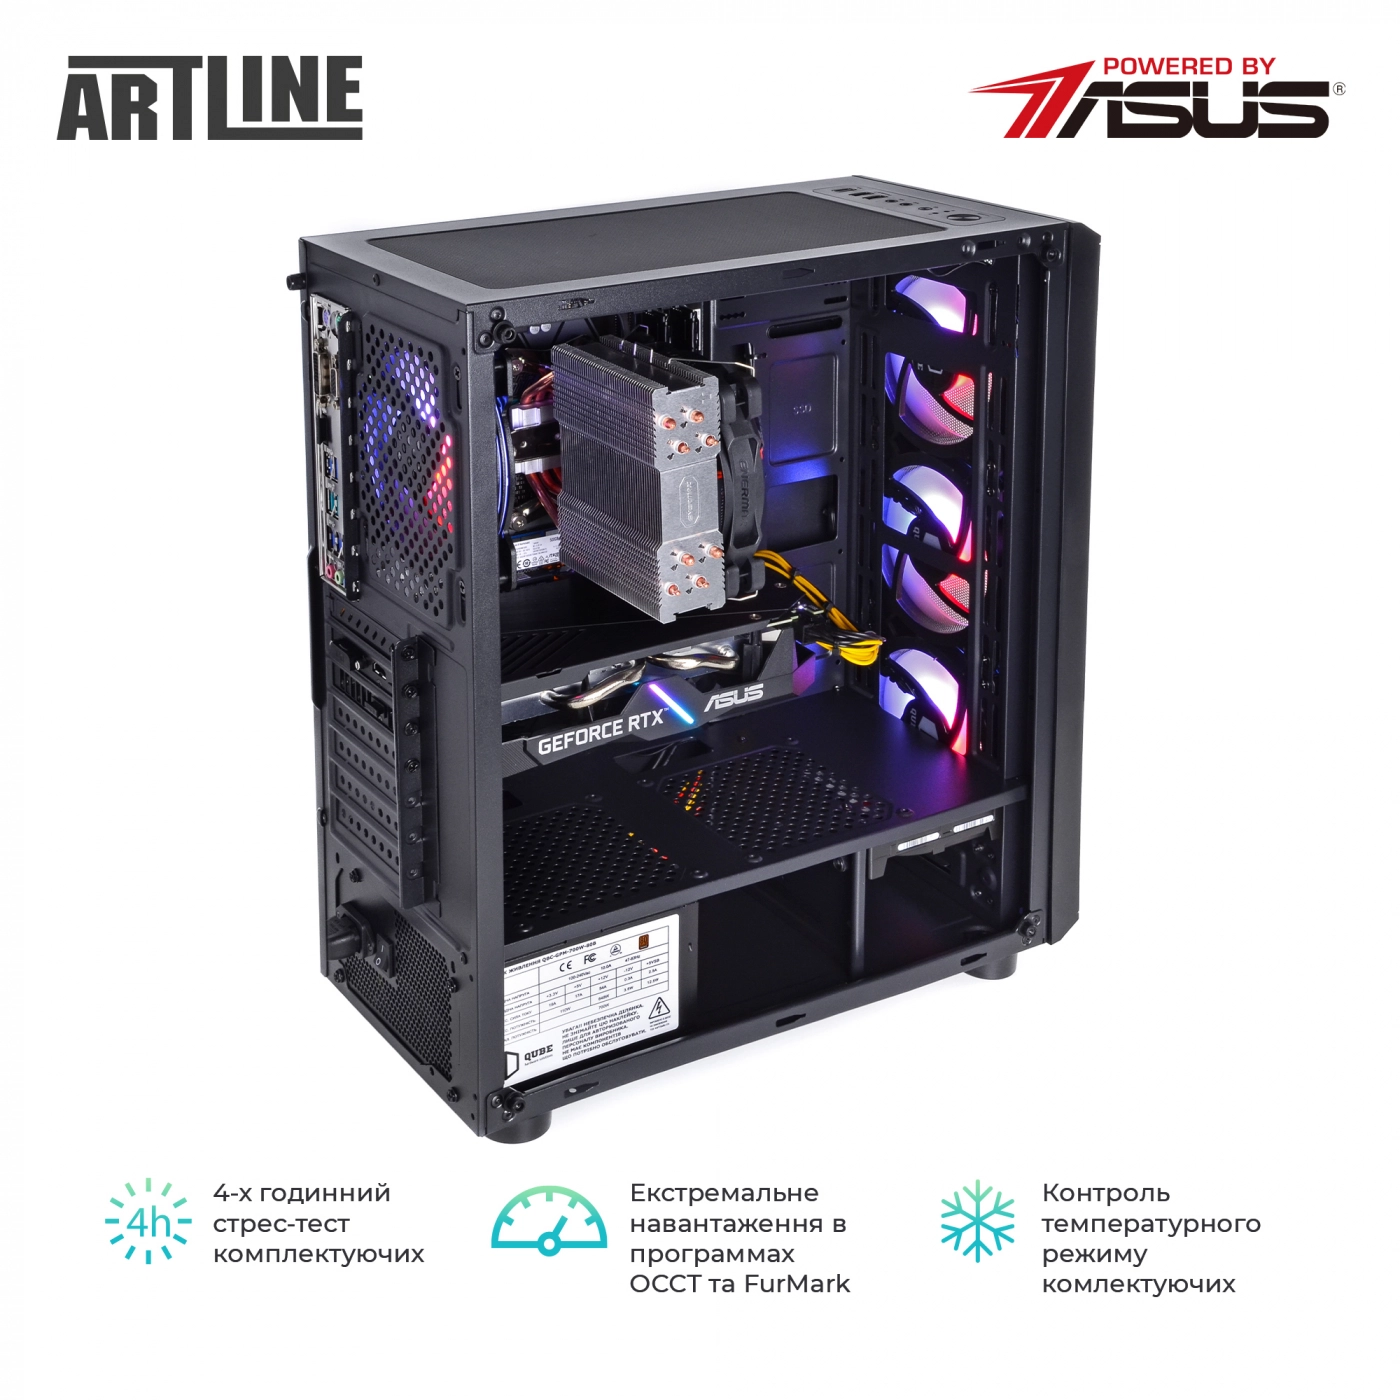 Купить Компьютер ARTLINE Gaming X73v11 - фото 9